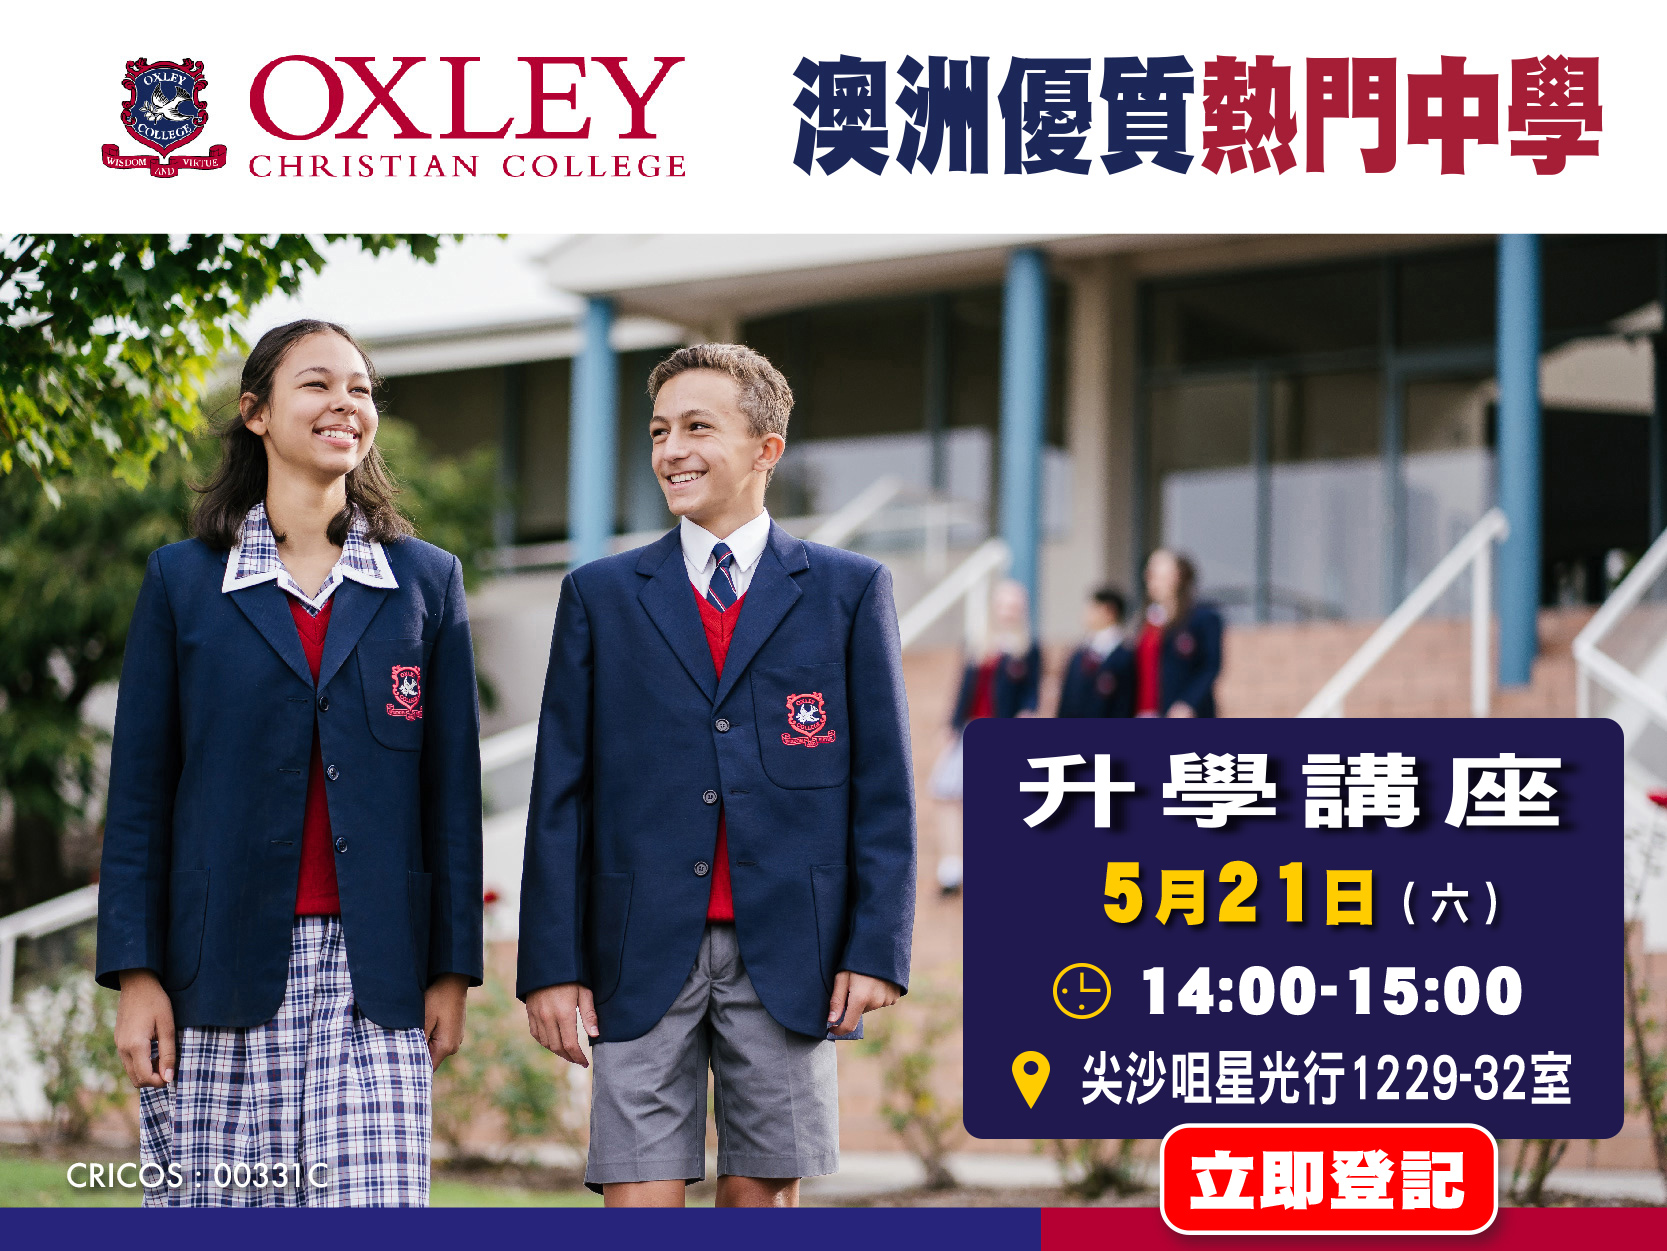 澳洲優質熱門中學Oxley Christian College升學講座 - 學聯海外升學中心 